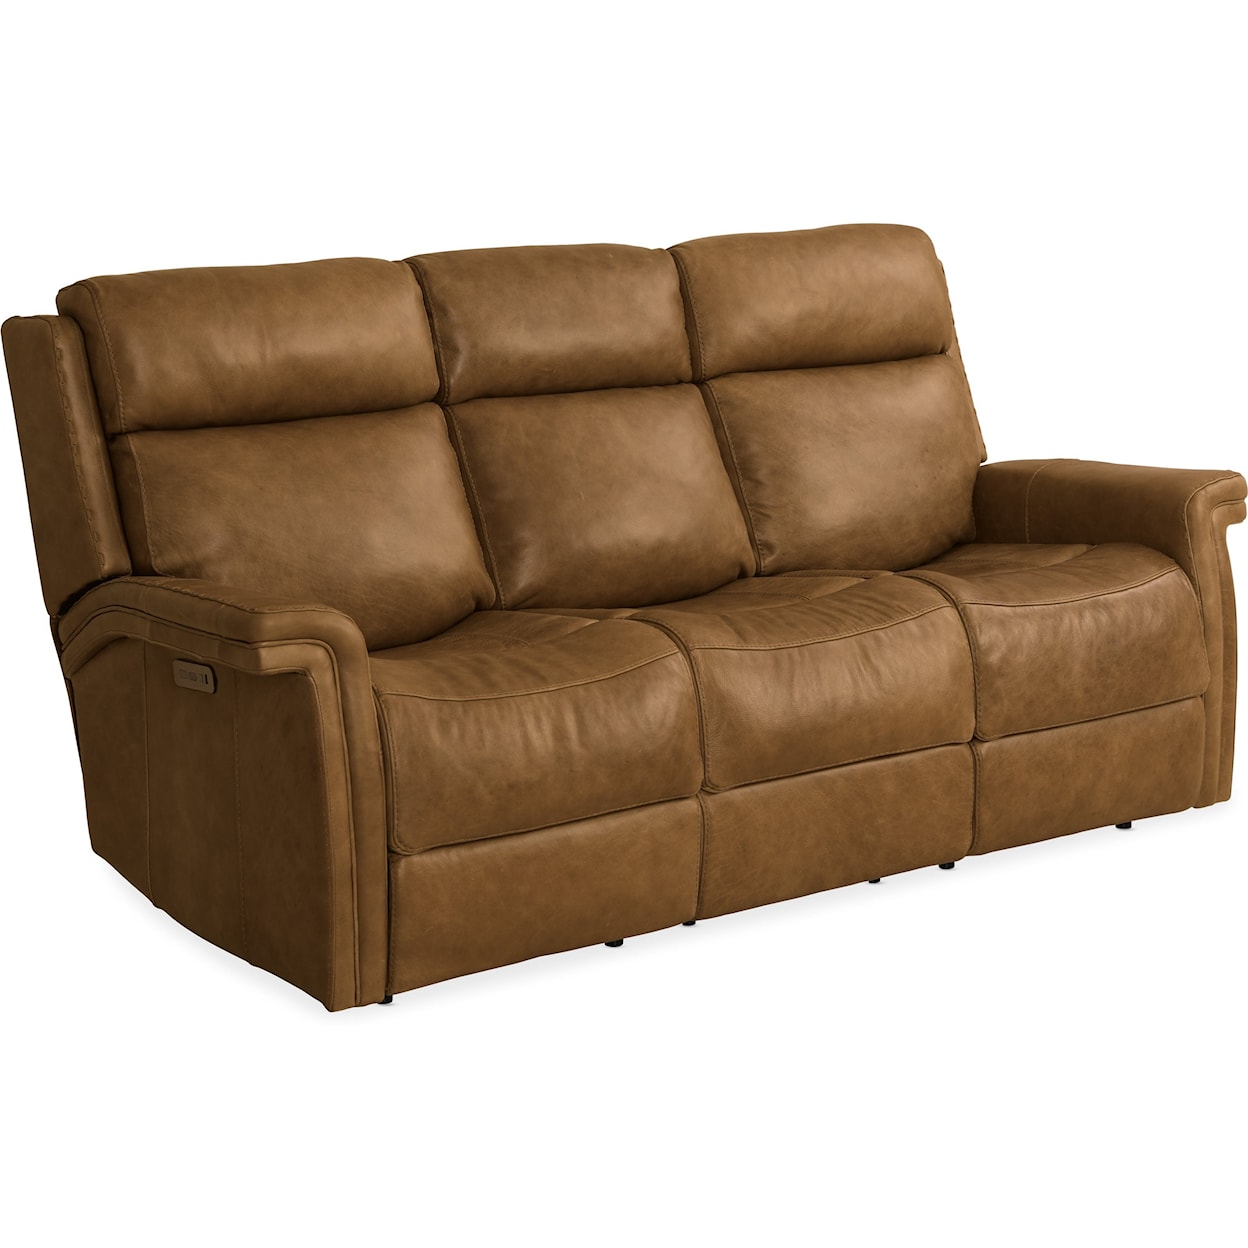 Hooker Furniture Poise Motion Sofa